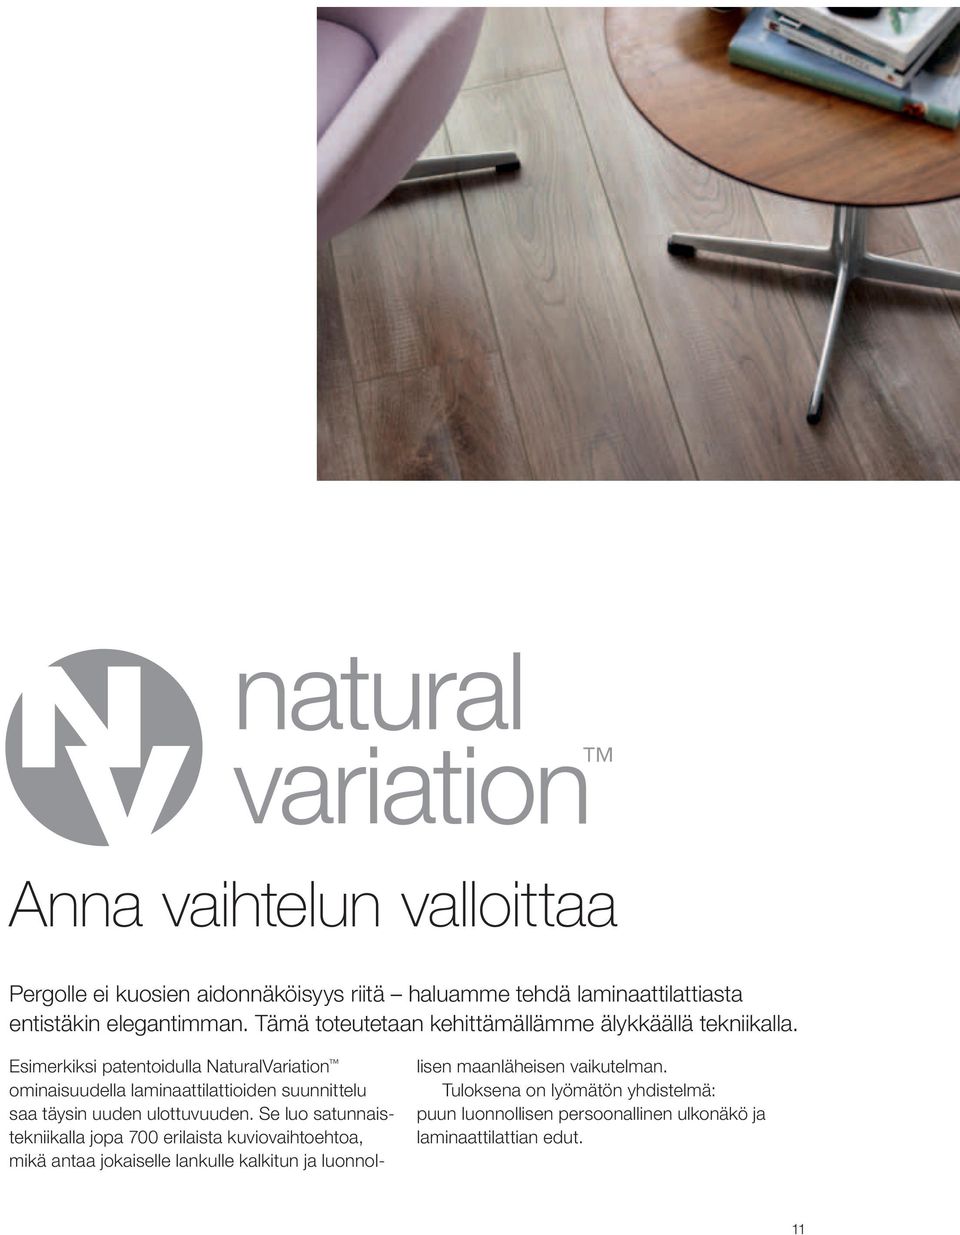 Esimerkiksi patentoidulla NaturalVariation ominaisuudella laminaattilattioiden suunnittelu saa täysin uuden ulottuvuuden.